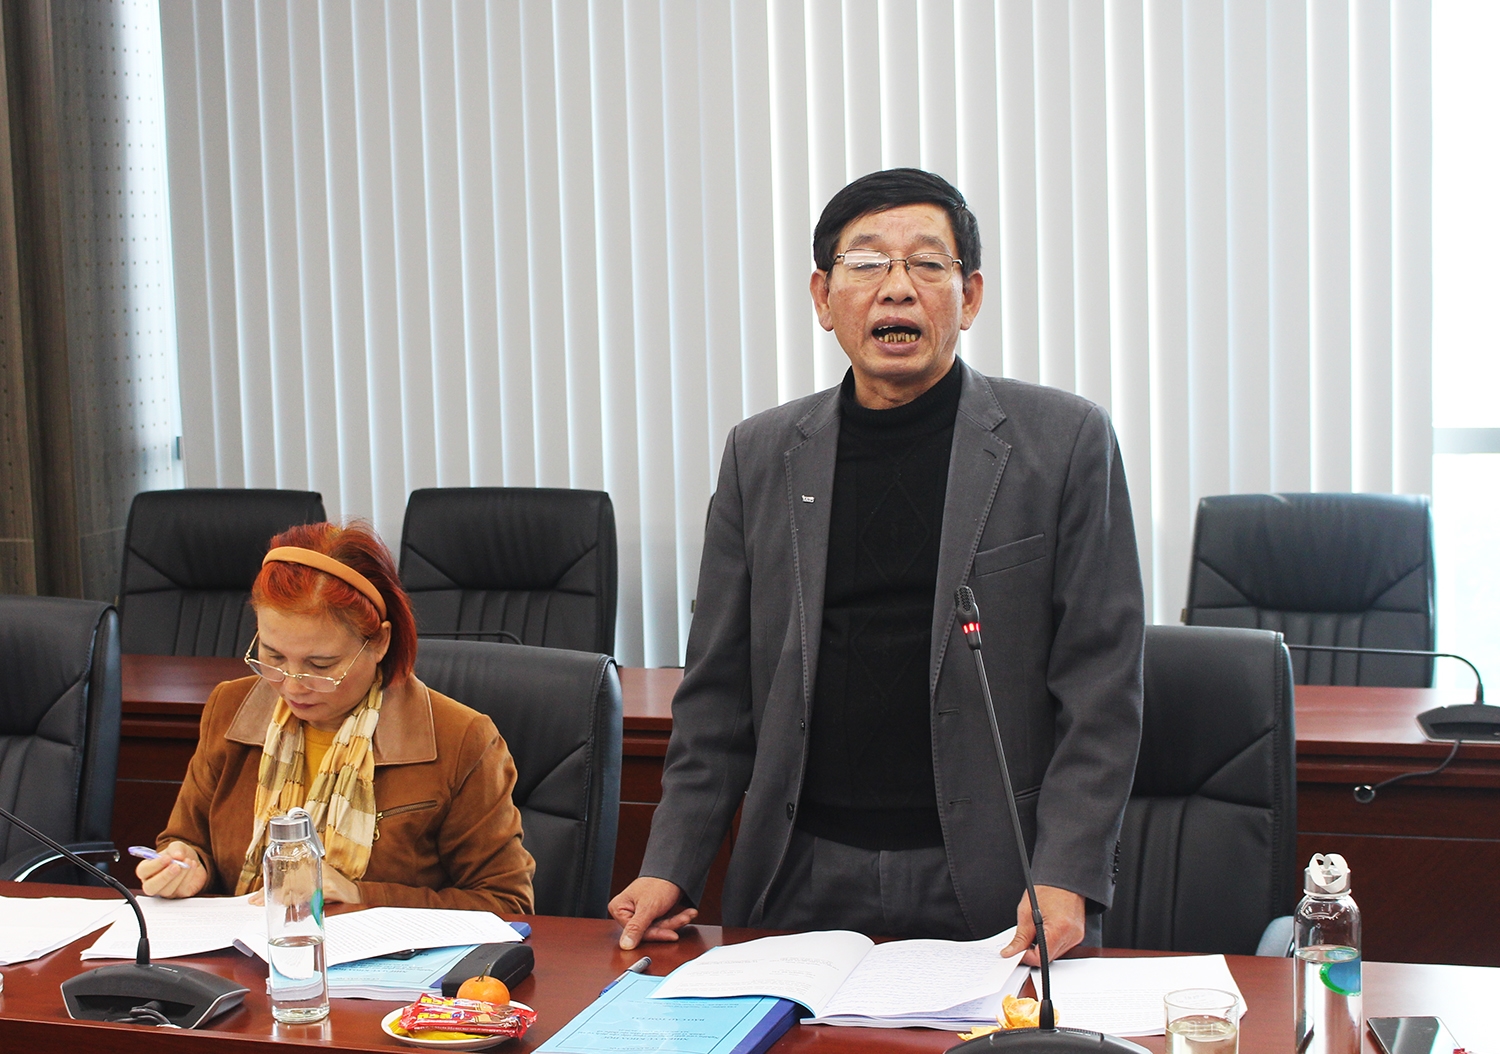 Ông Nguyễn Huy Duẩn - nguyên Phó Vụ trưởng Vụ Kế hoạch - Tài chính (UBDT), Chủ nhiệm Đề tài, thay mặt nhóm nghiên cứu trình bày tóm tắt các kết quả nghiên cứu của Đề tài